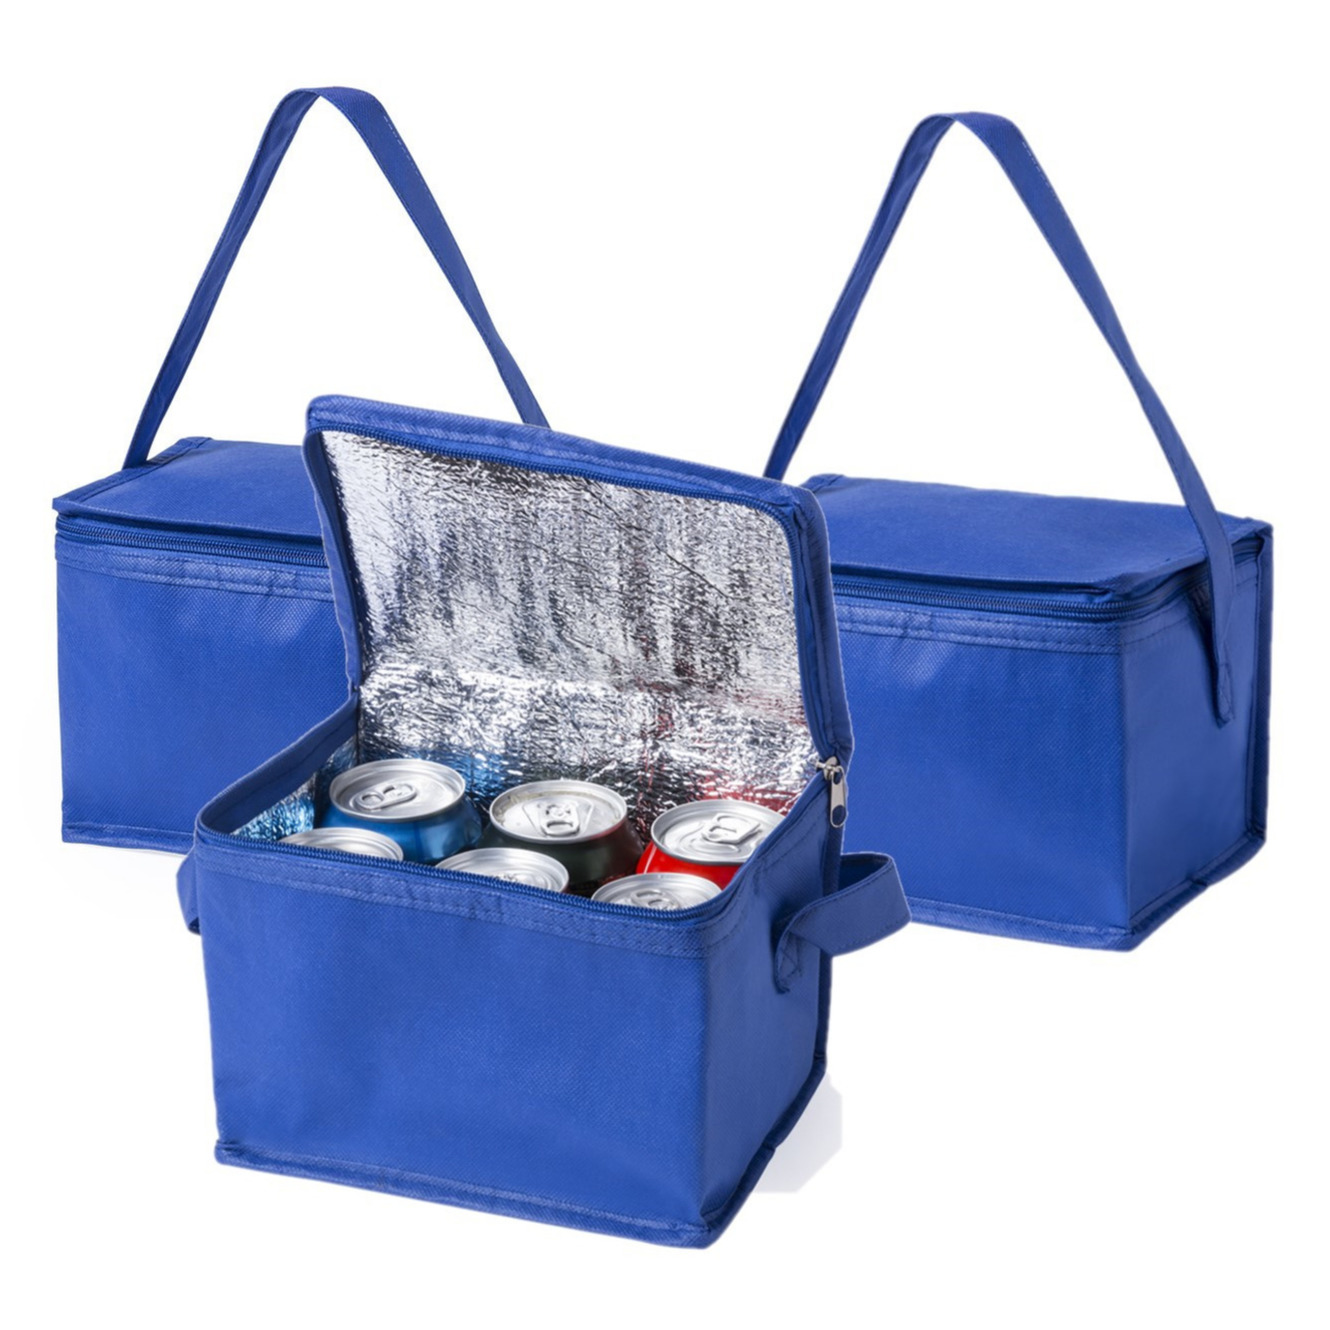 10x stuks kleine mini  koeltassen blauw sixpack blikjes - Compacte koelboxen/koeltassen en elementen